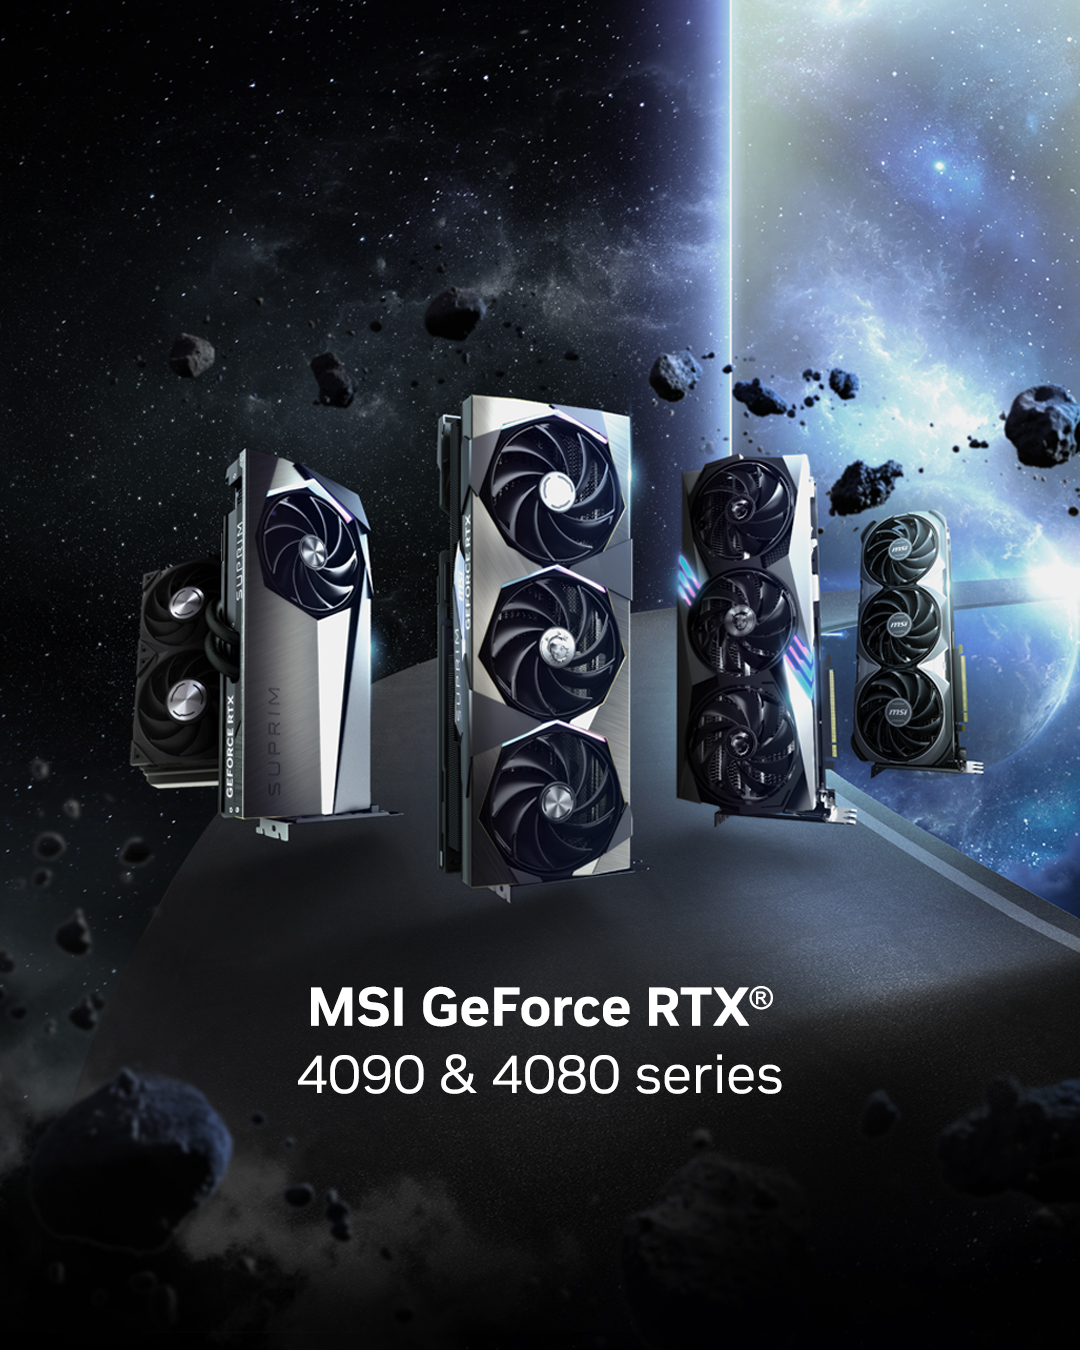 MSI GeForce RTX 4000 9ffac